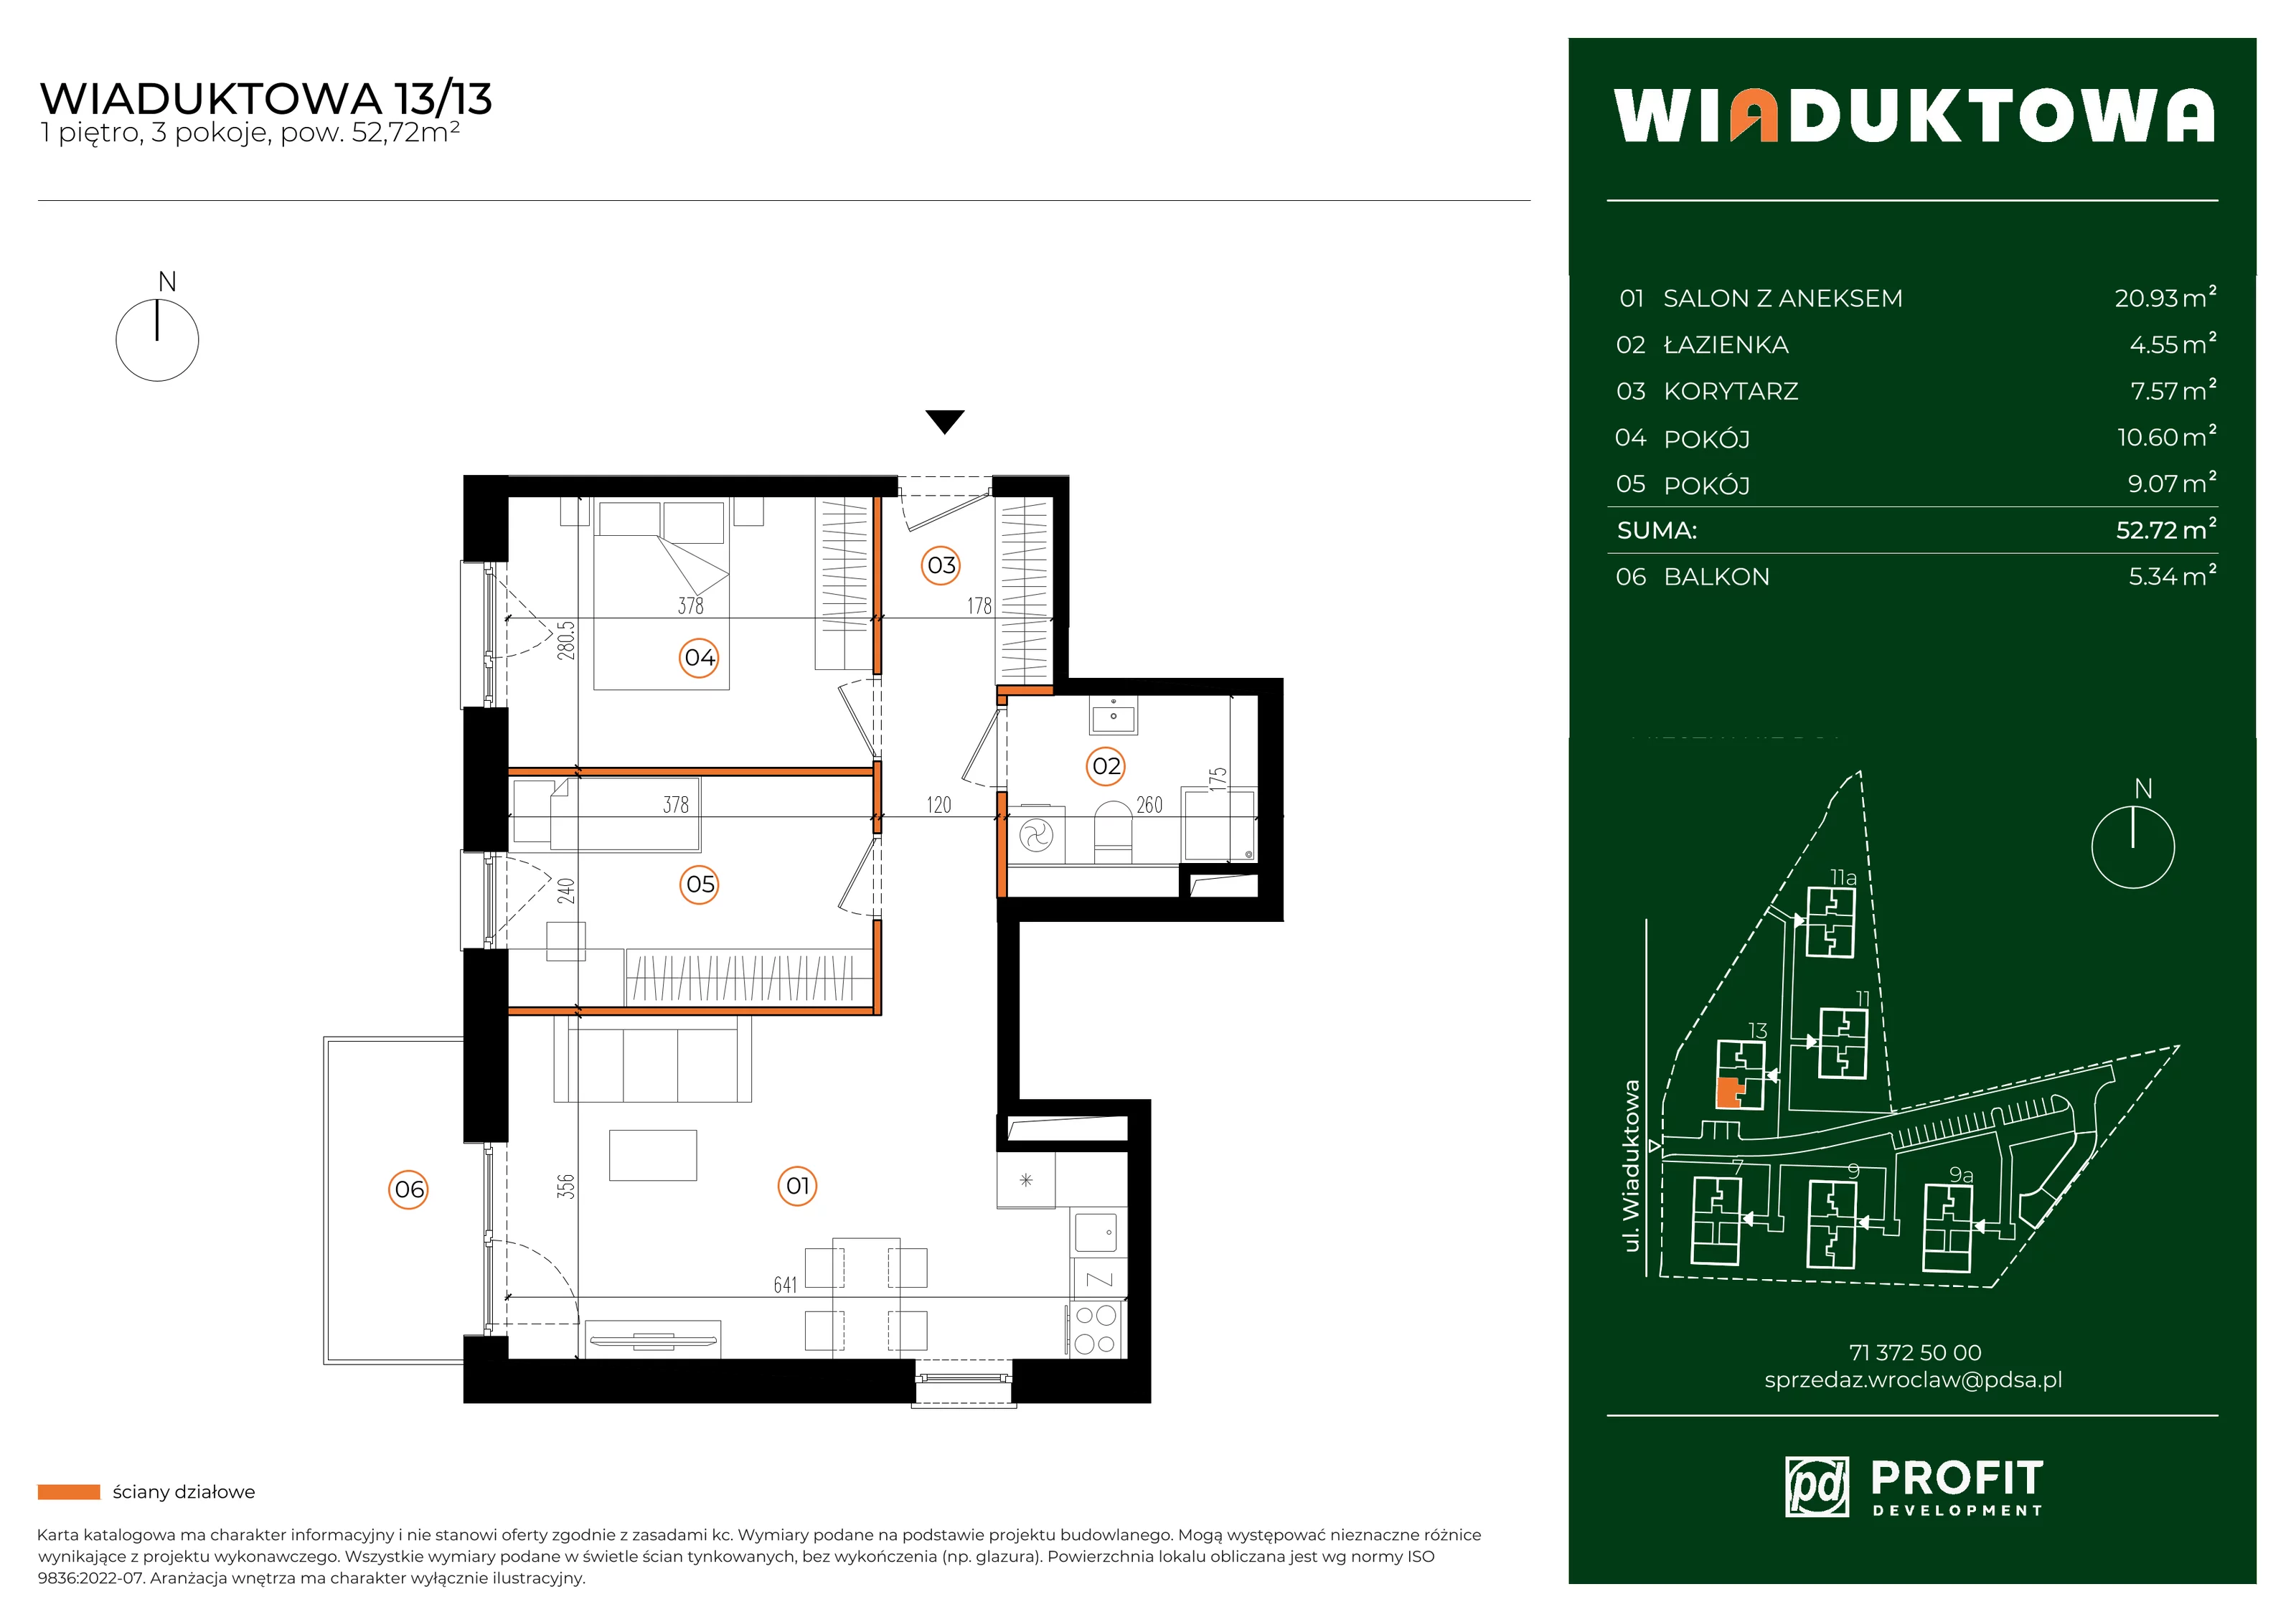 Mieszkanie 52,72 m², piętro 1, oferta nr WI/13/13, Wiaduktowa, Wrocław, Krzyki-Partynice, Krzyki, ul. Wiaduktowa